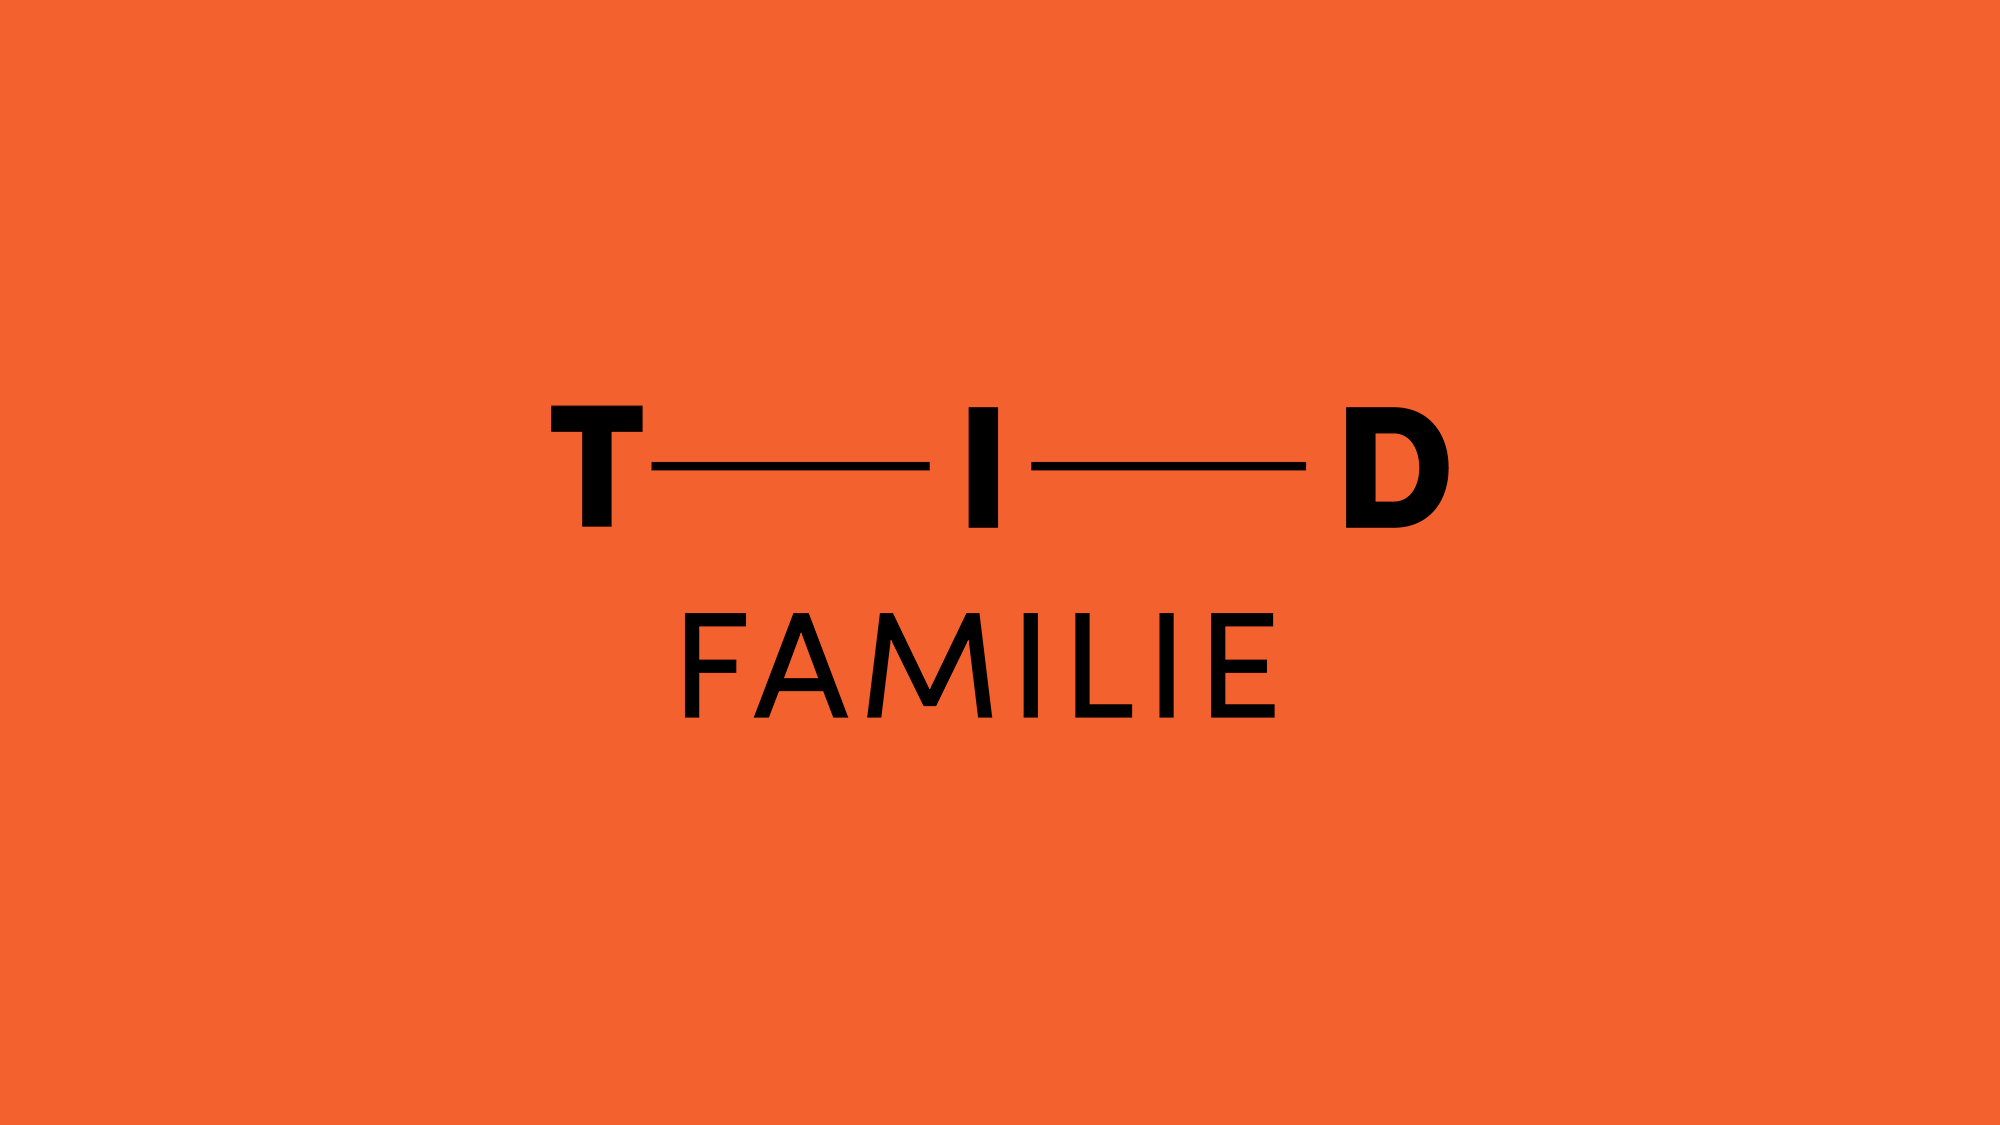 Tid familie logo